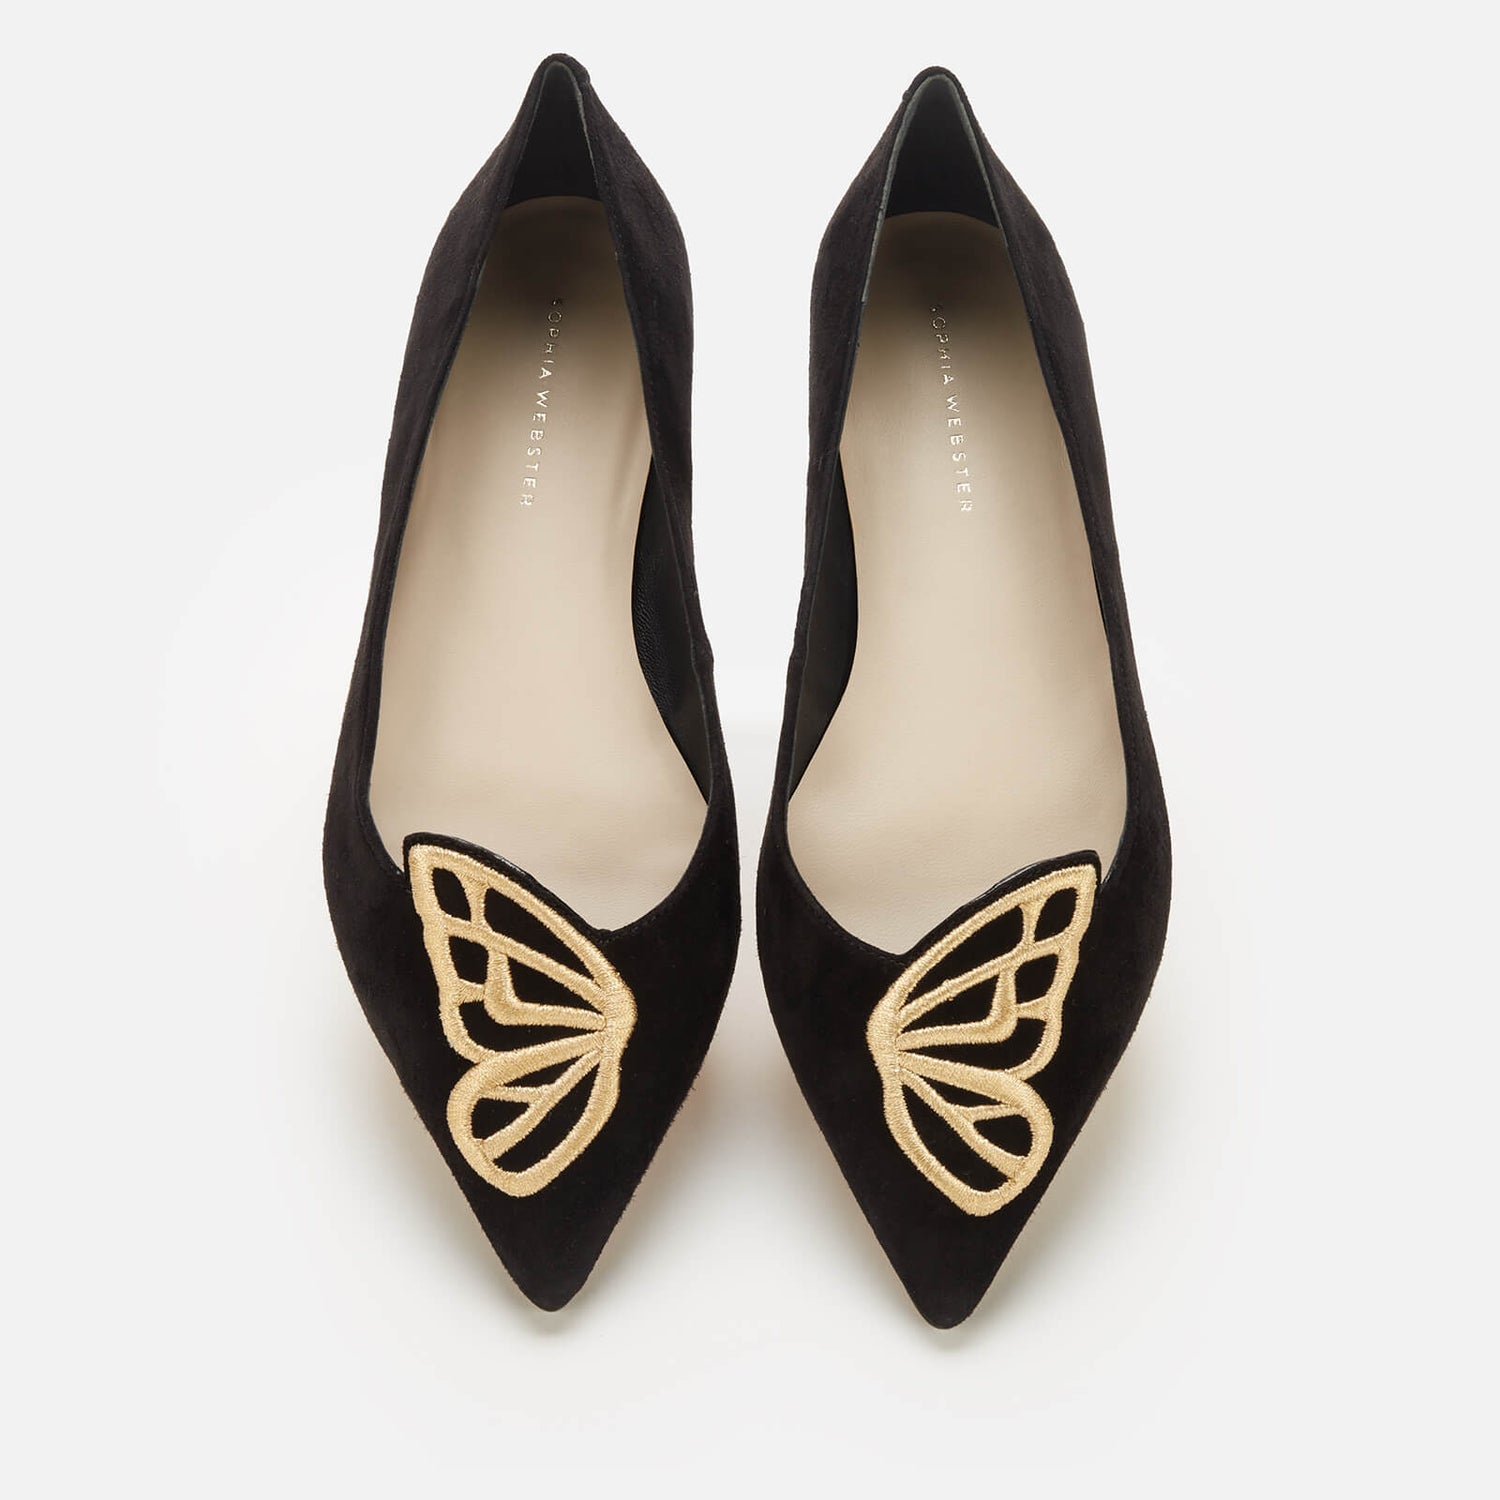 Sophia Webster Women's Butterfly Flats - Black/Gold - UK 3